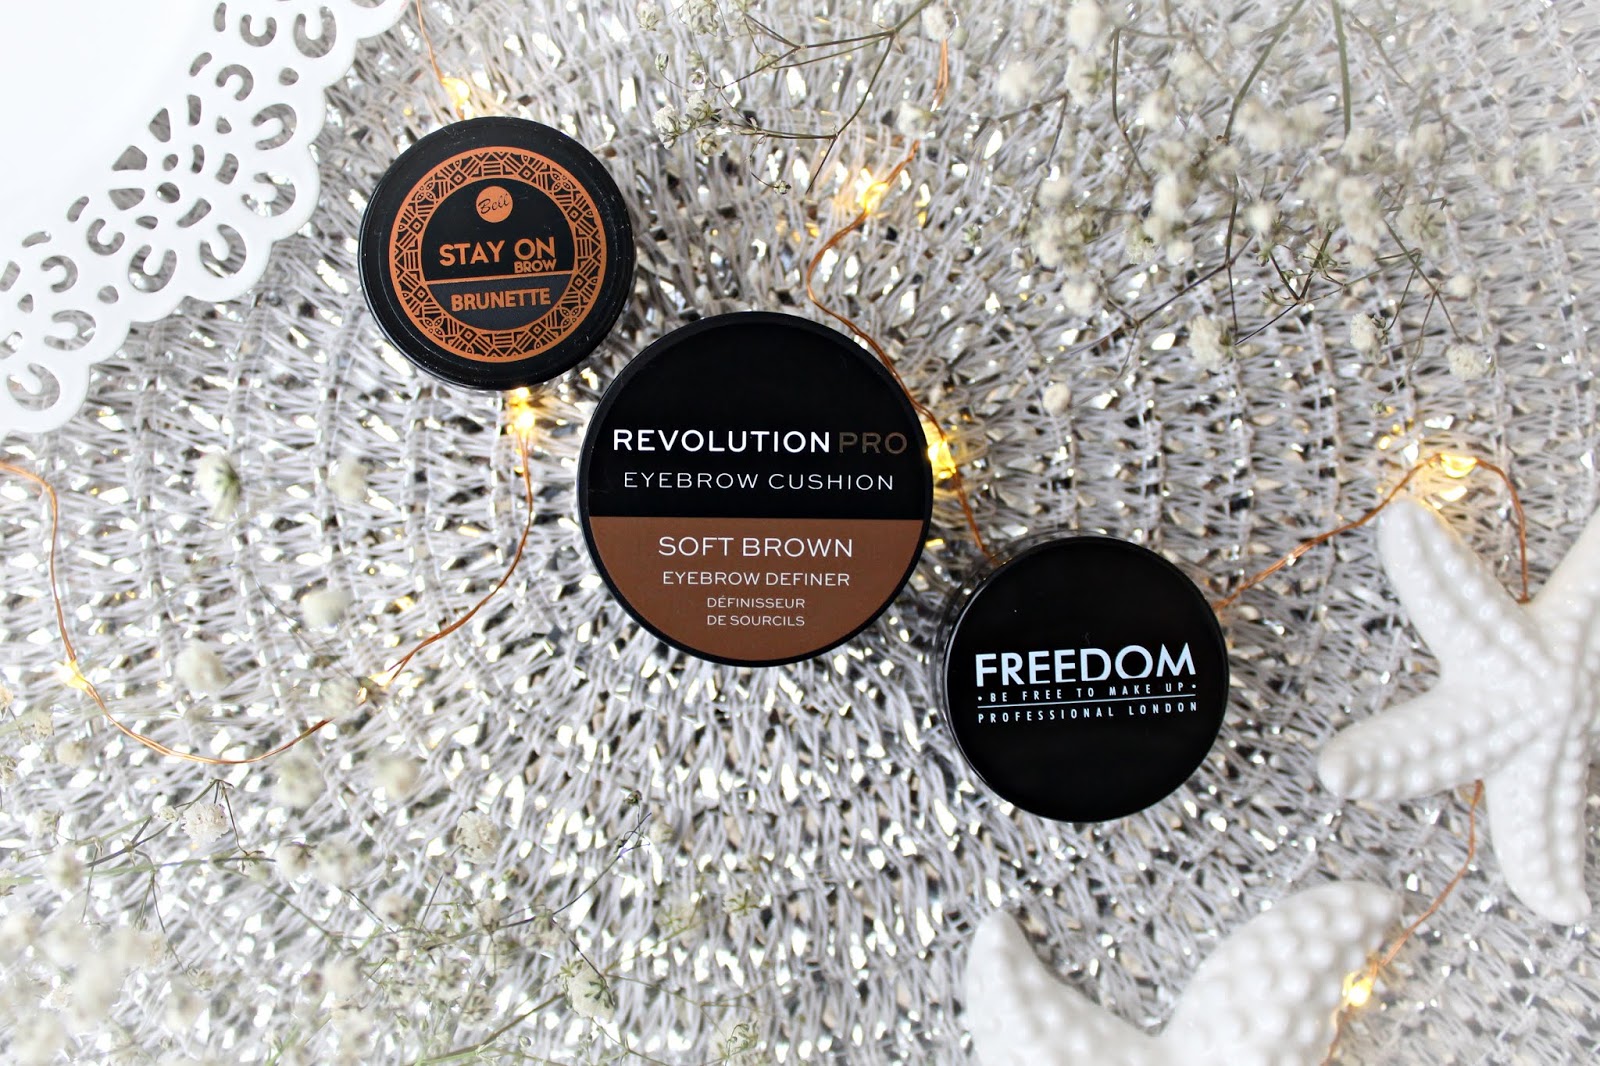 Freedom Pro Brow Pomade, Revolution Pro Eyebrow Cushion oraz Bell Stay On Brow - porÃ³wnanie 3 pomad do brwi  | Zuzka Pisze